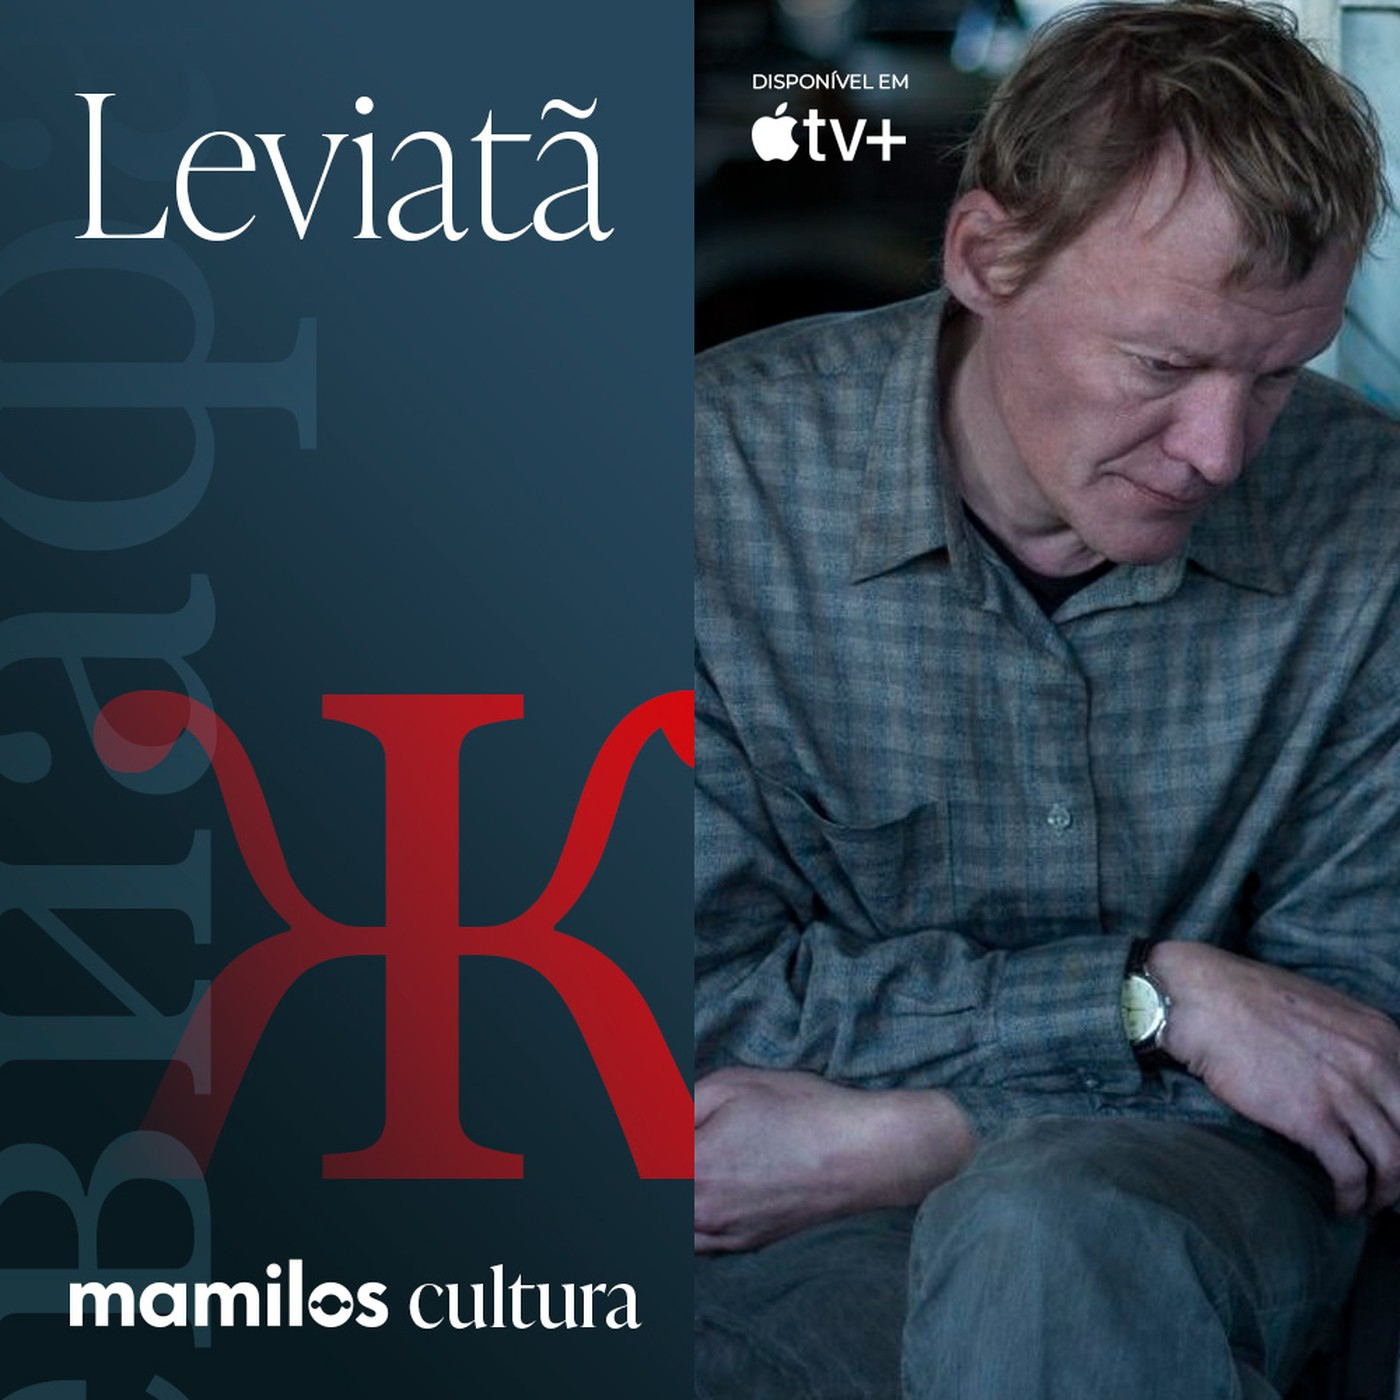 Mamilos Cultura 52: Filme “Leviatã” e o cancelamento russo